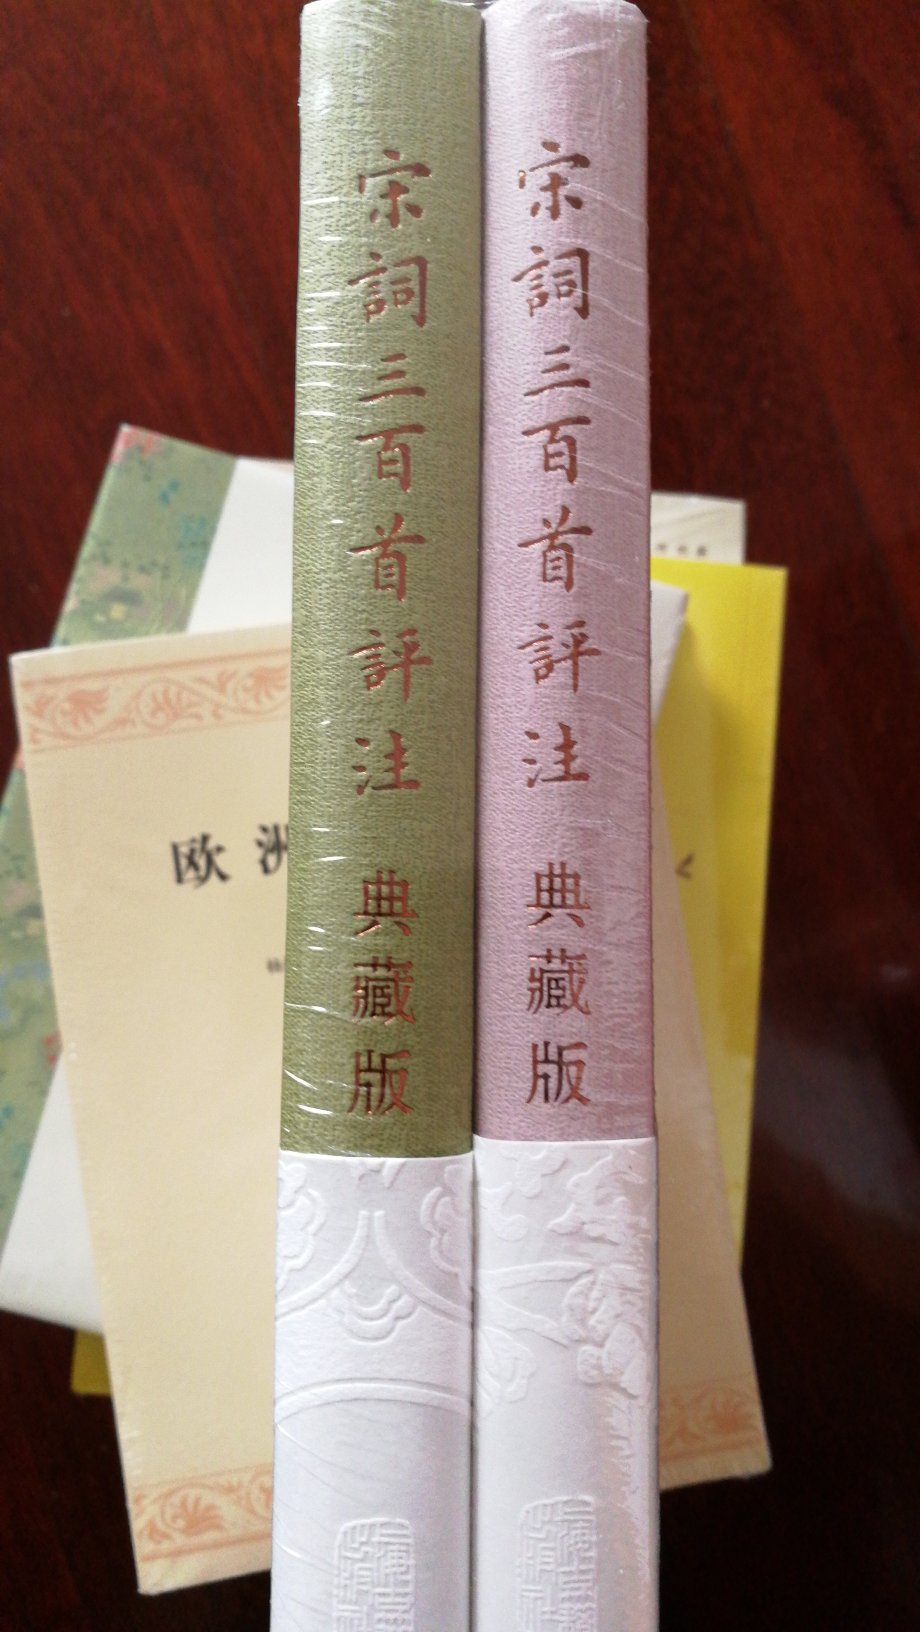 关于宋词的著述已有很多，但是王水照先生是研究宋代文学的大家，他的见解值得学习参考。